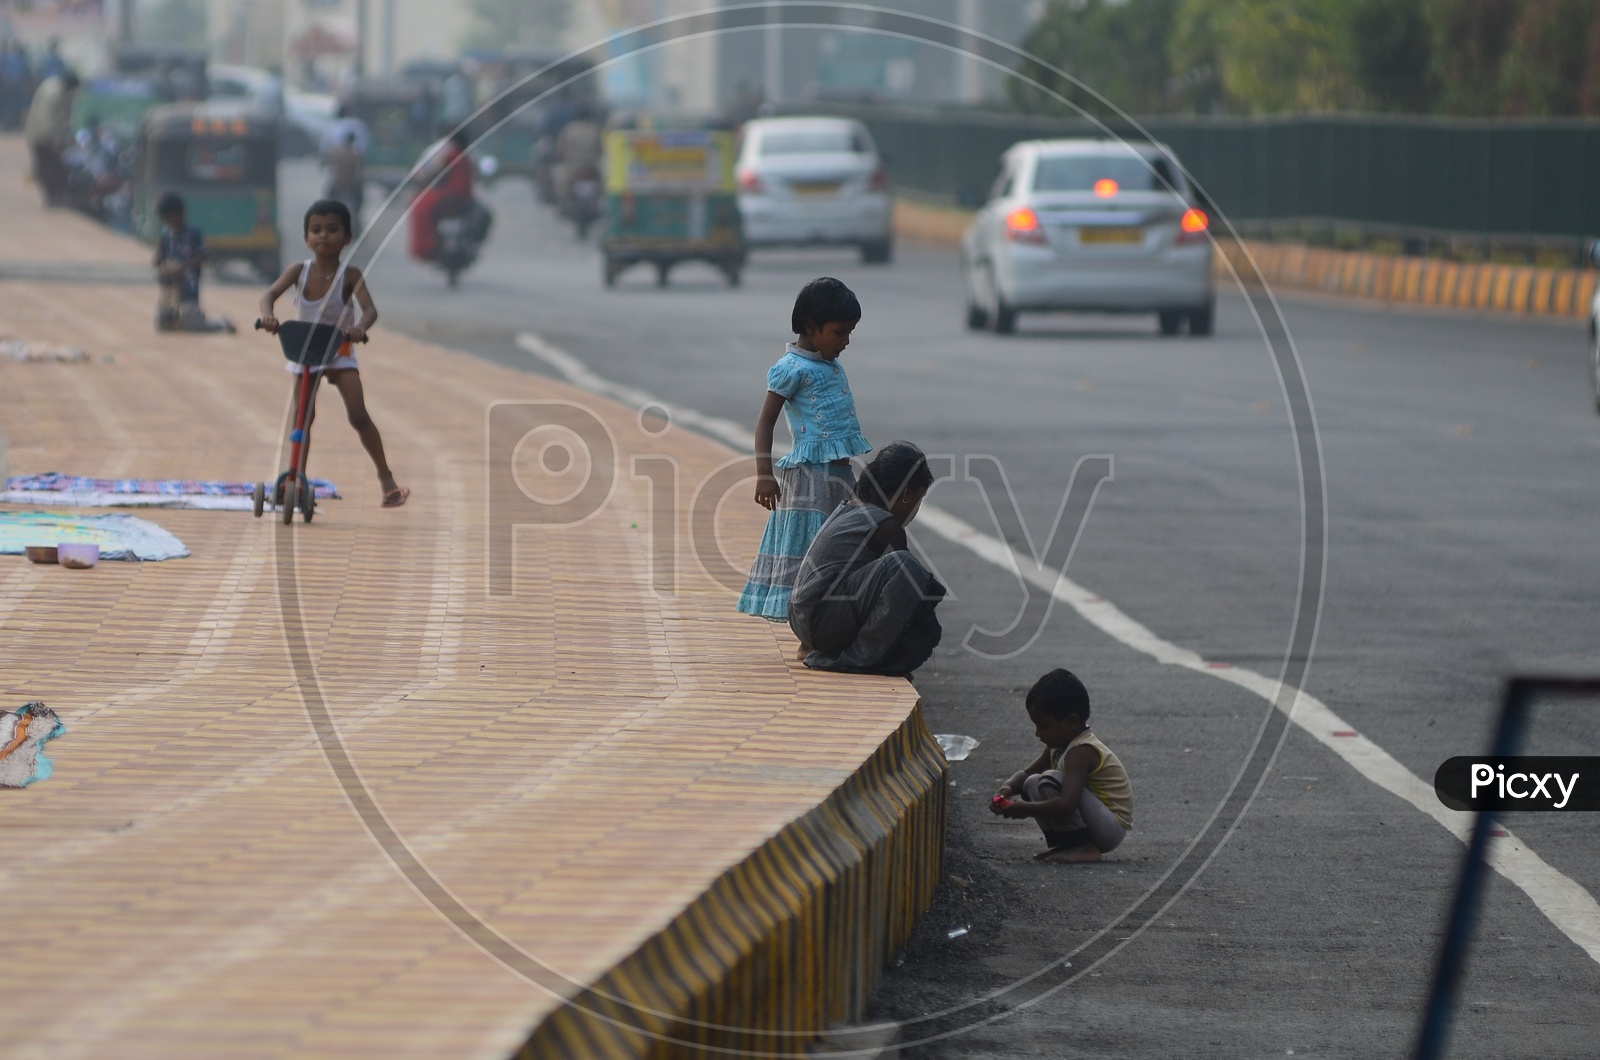 Children, footpath